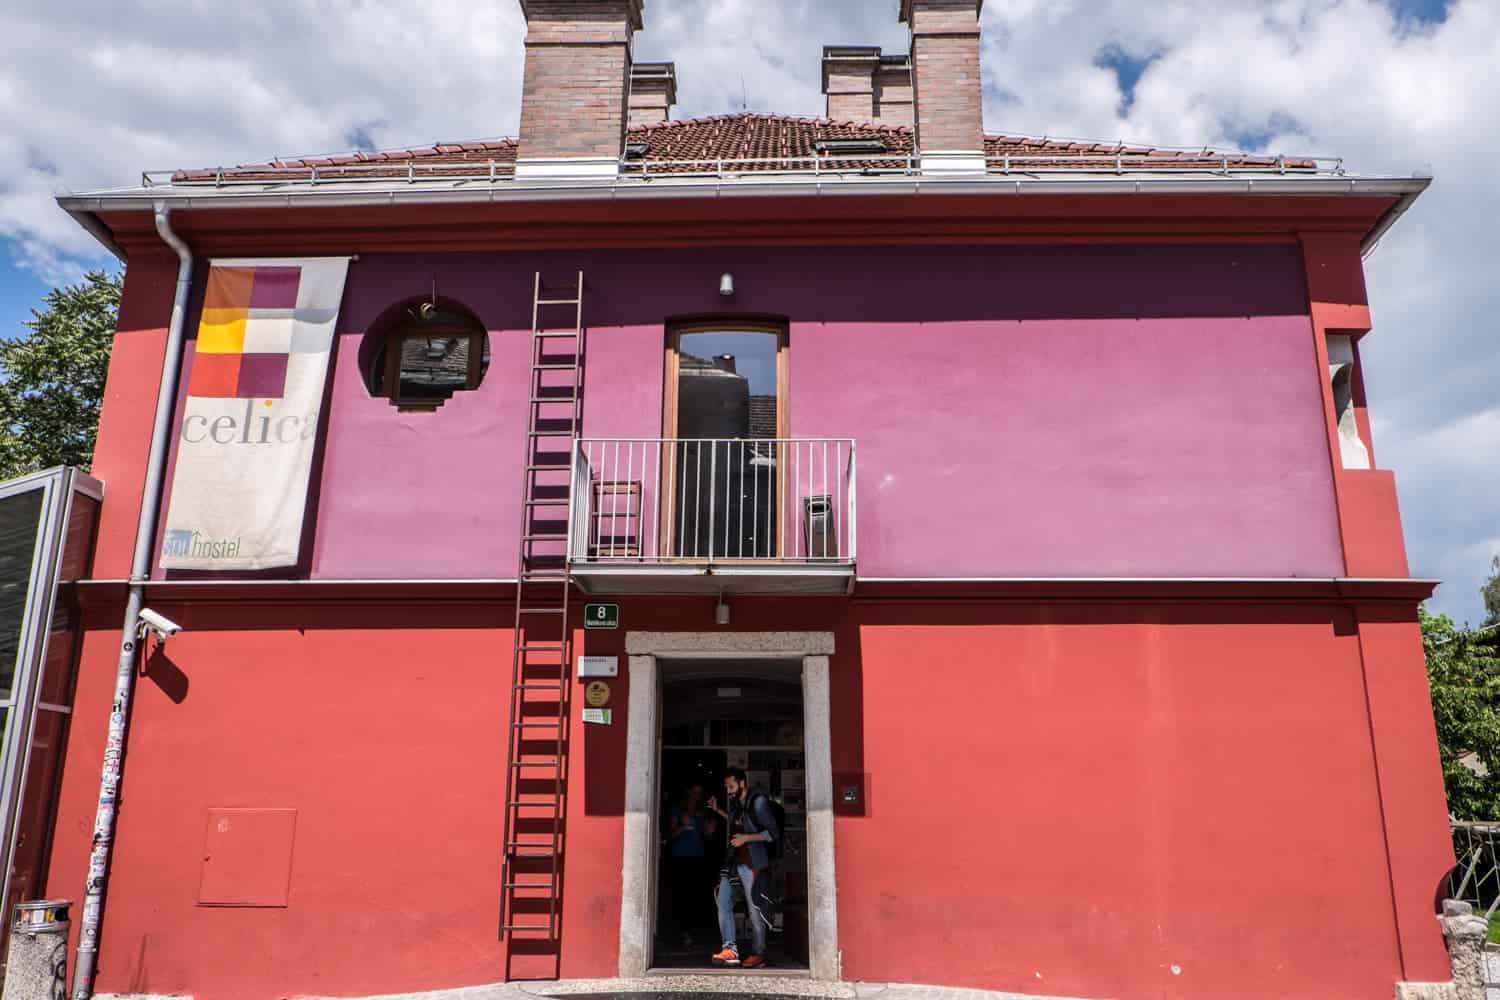 Former prison turned hostel Celica in Metelkova, Ljubljana, Slovenia